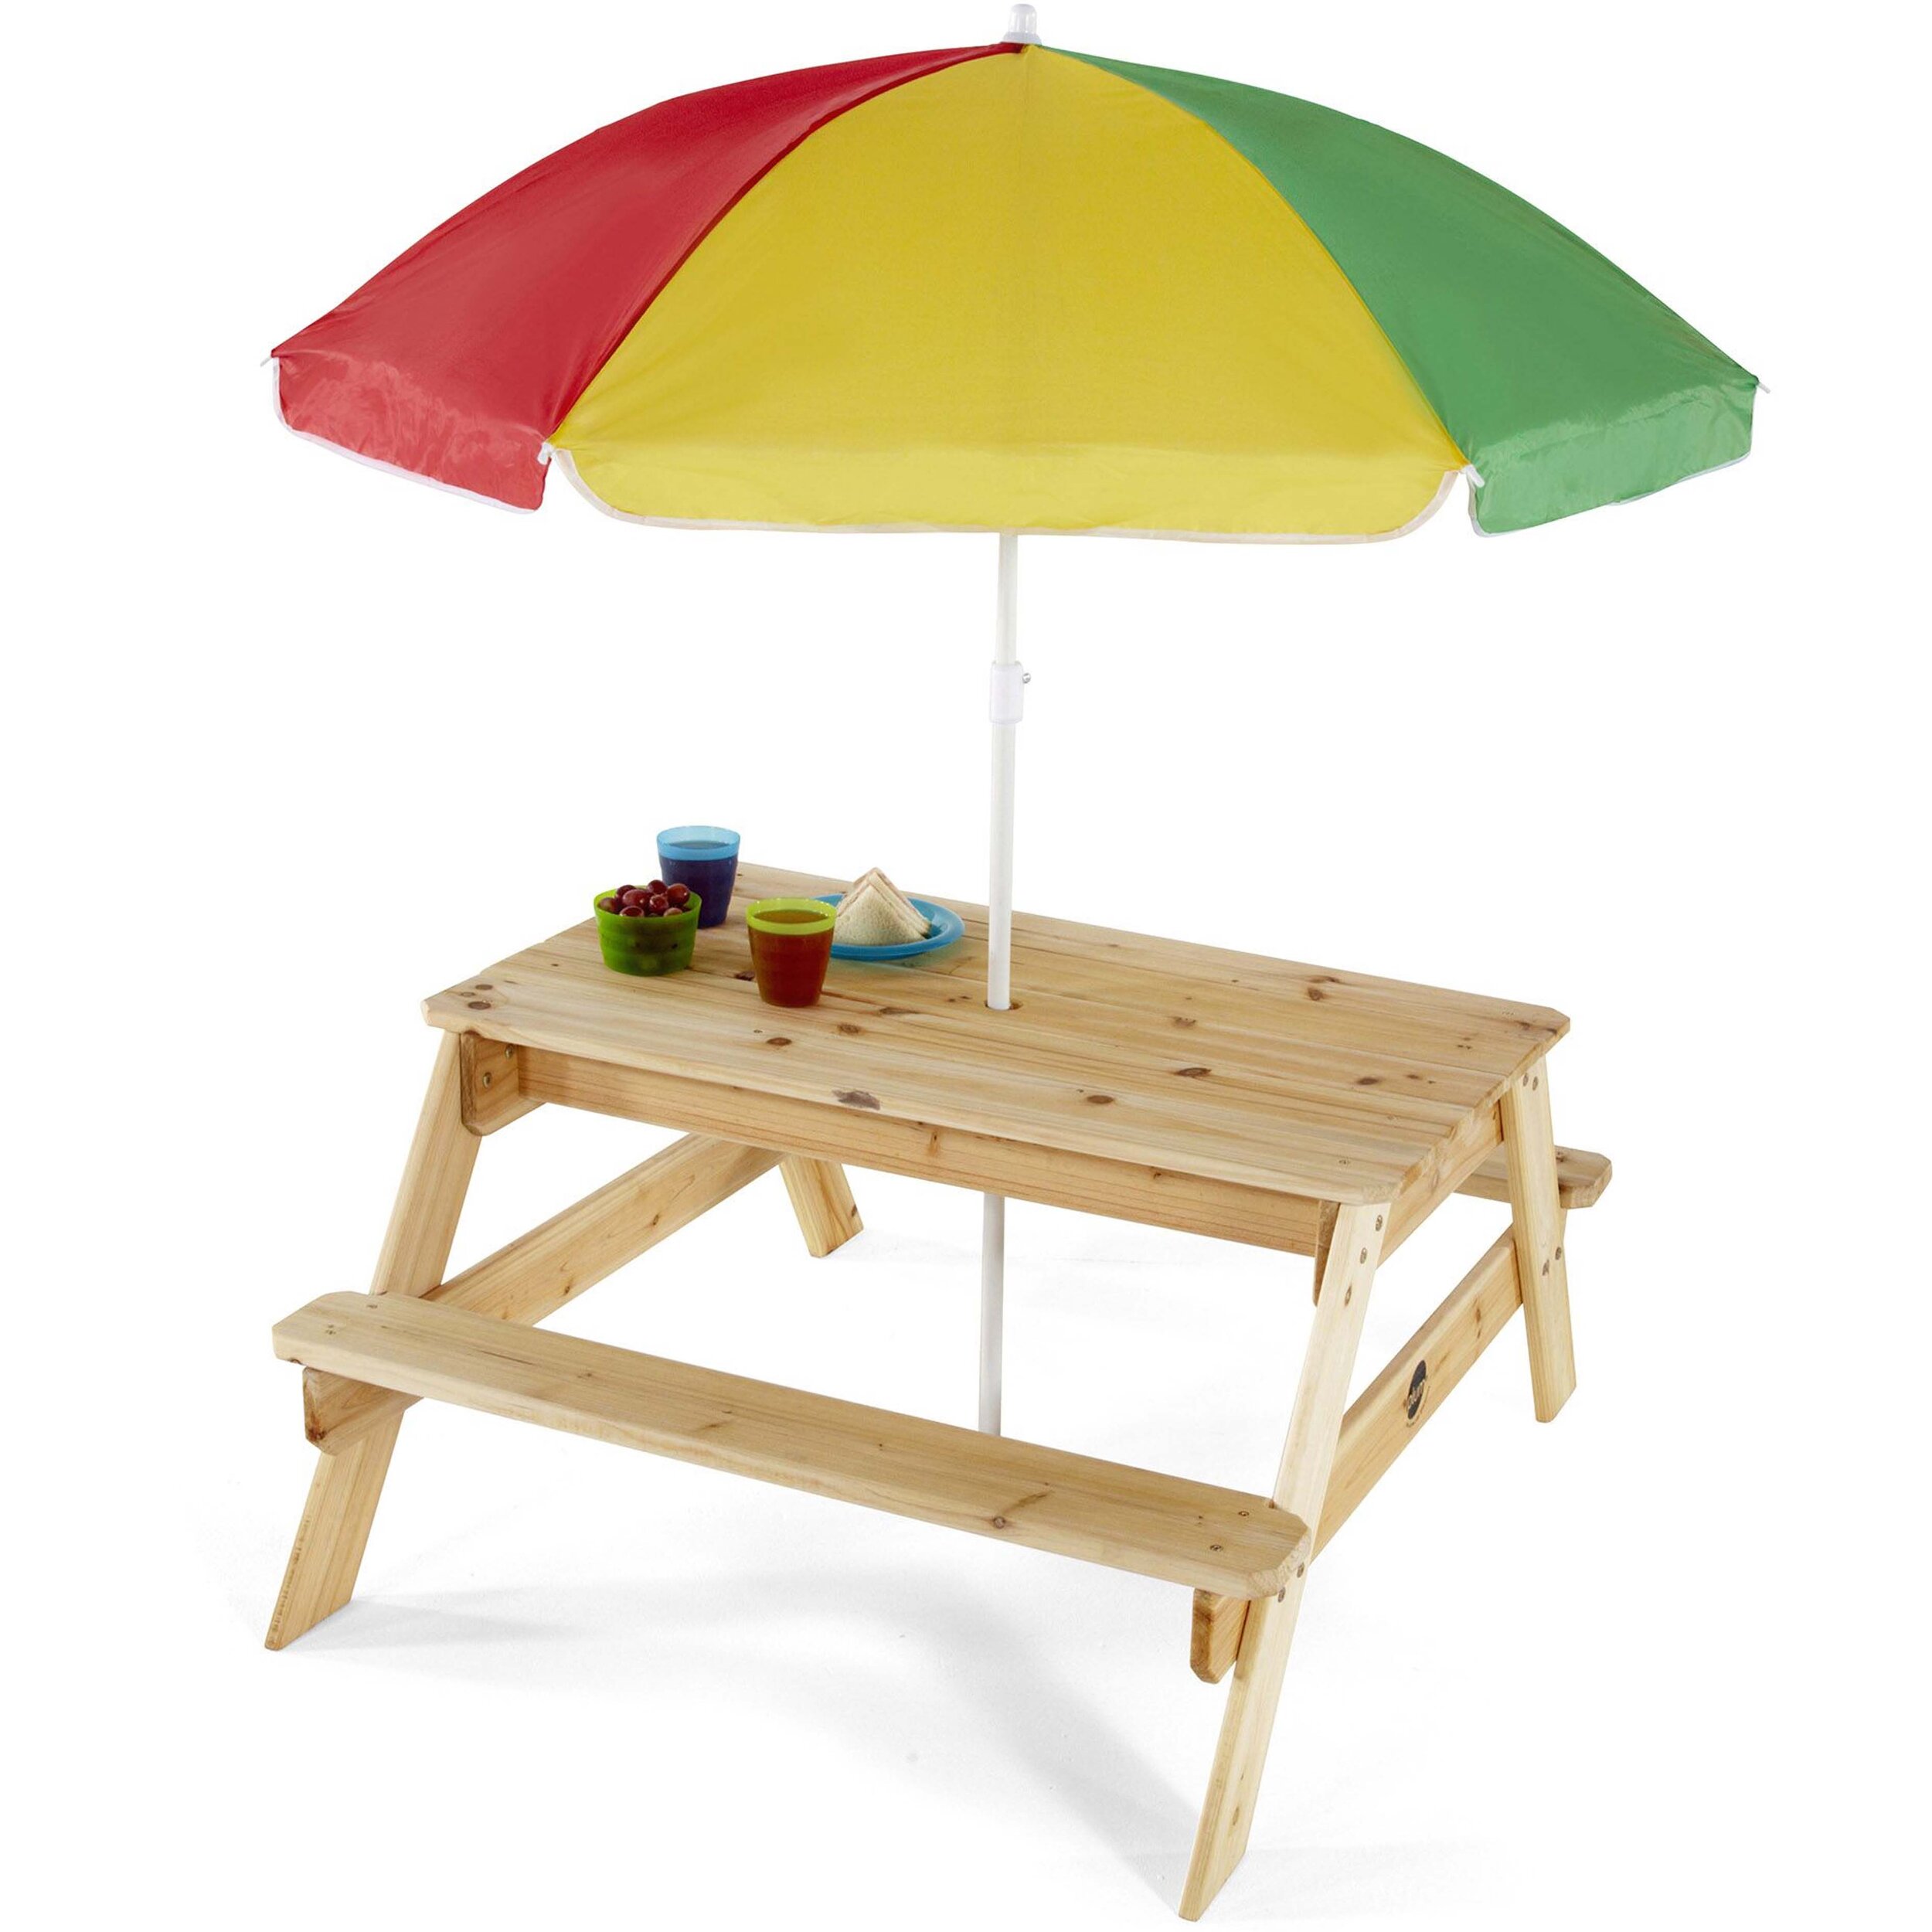 plum-tavolino-ombrellone-25075-legno-giochi-esterno-babylove2000-prodotto.jpg